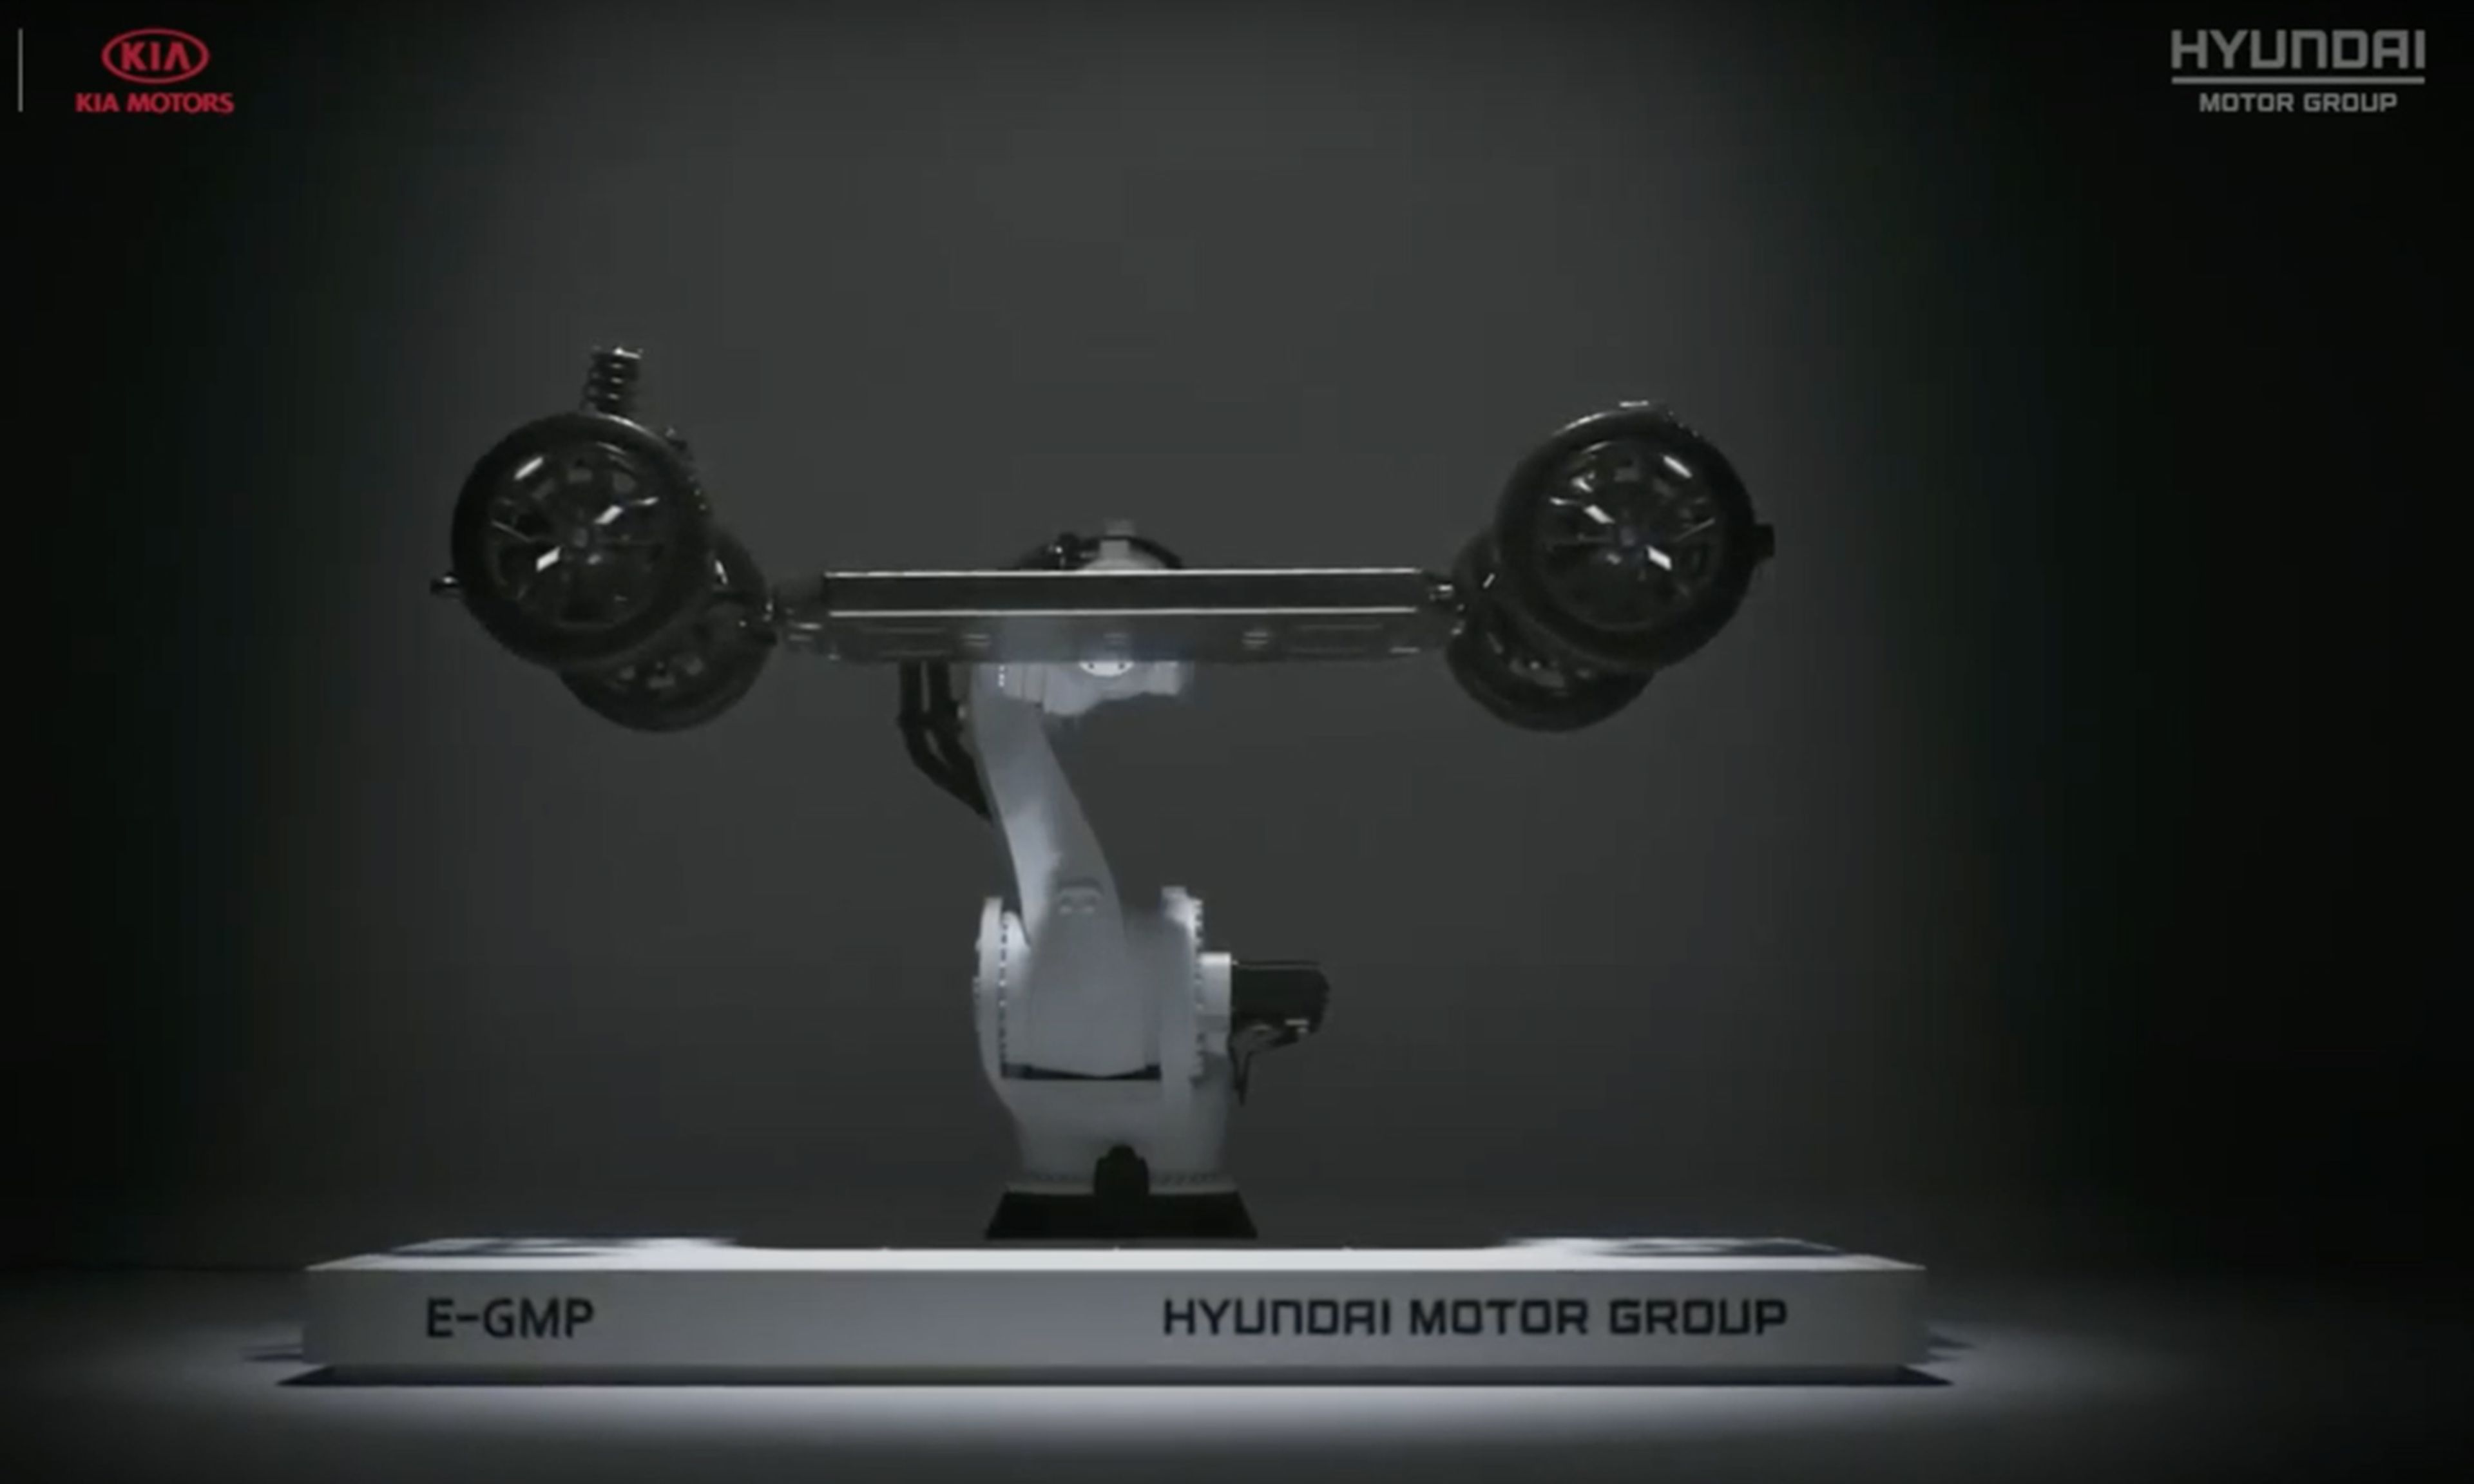 E-GMP la plataforma eléctrica de Hyundai